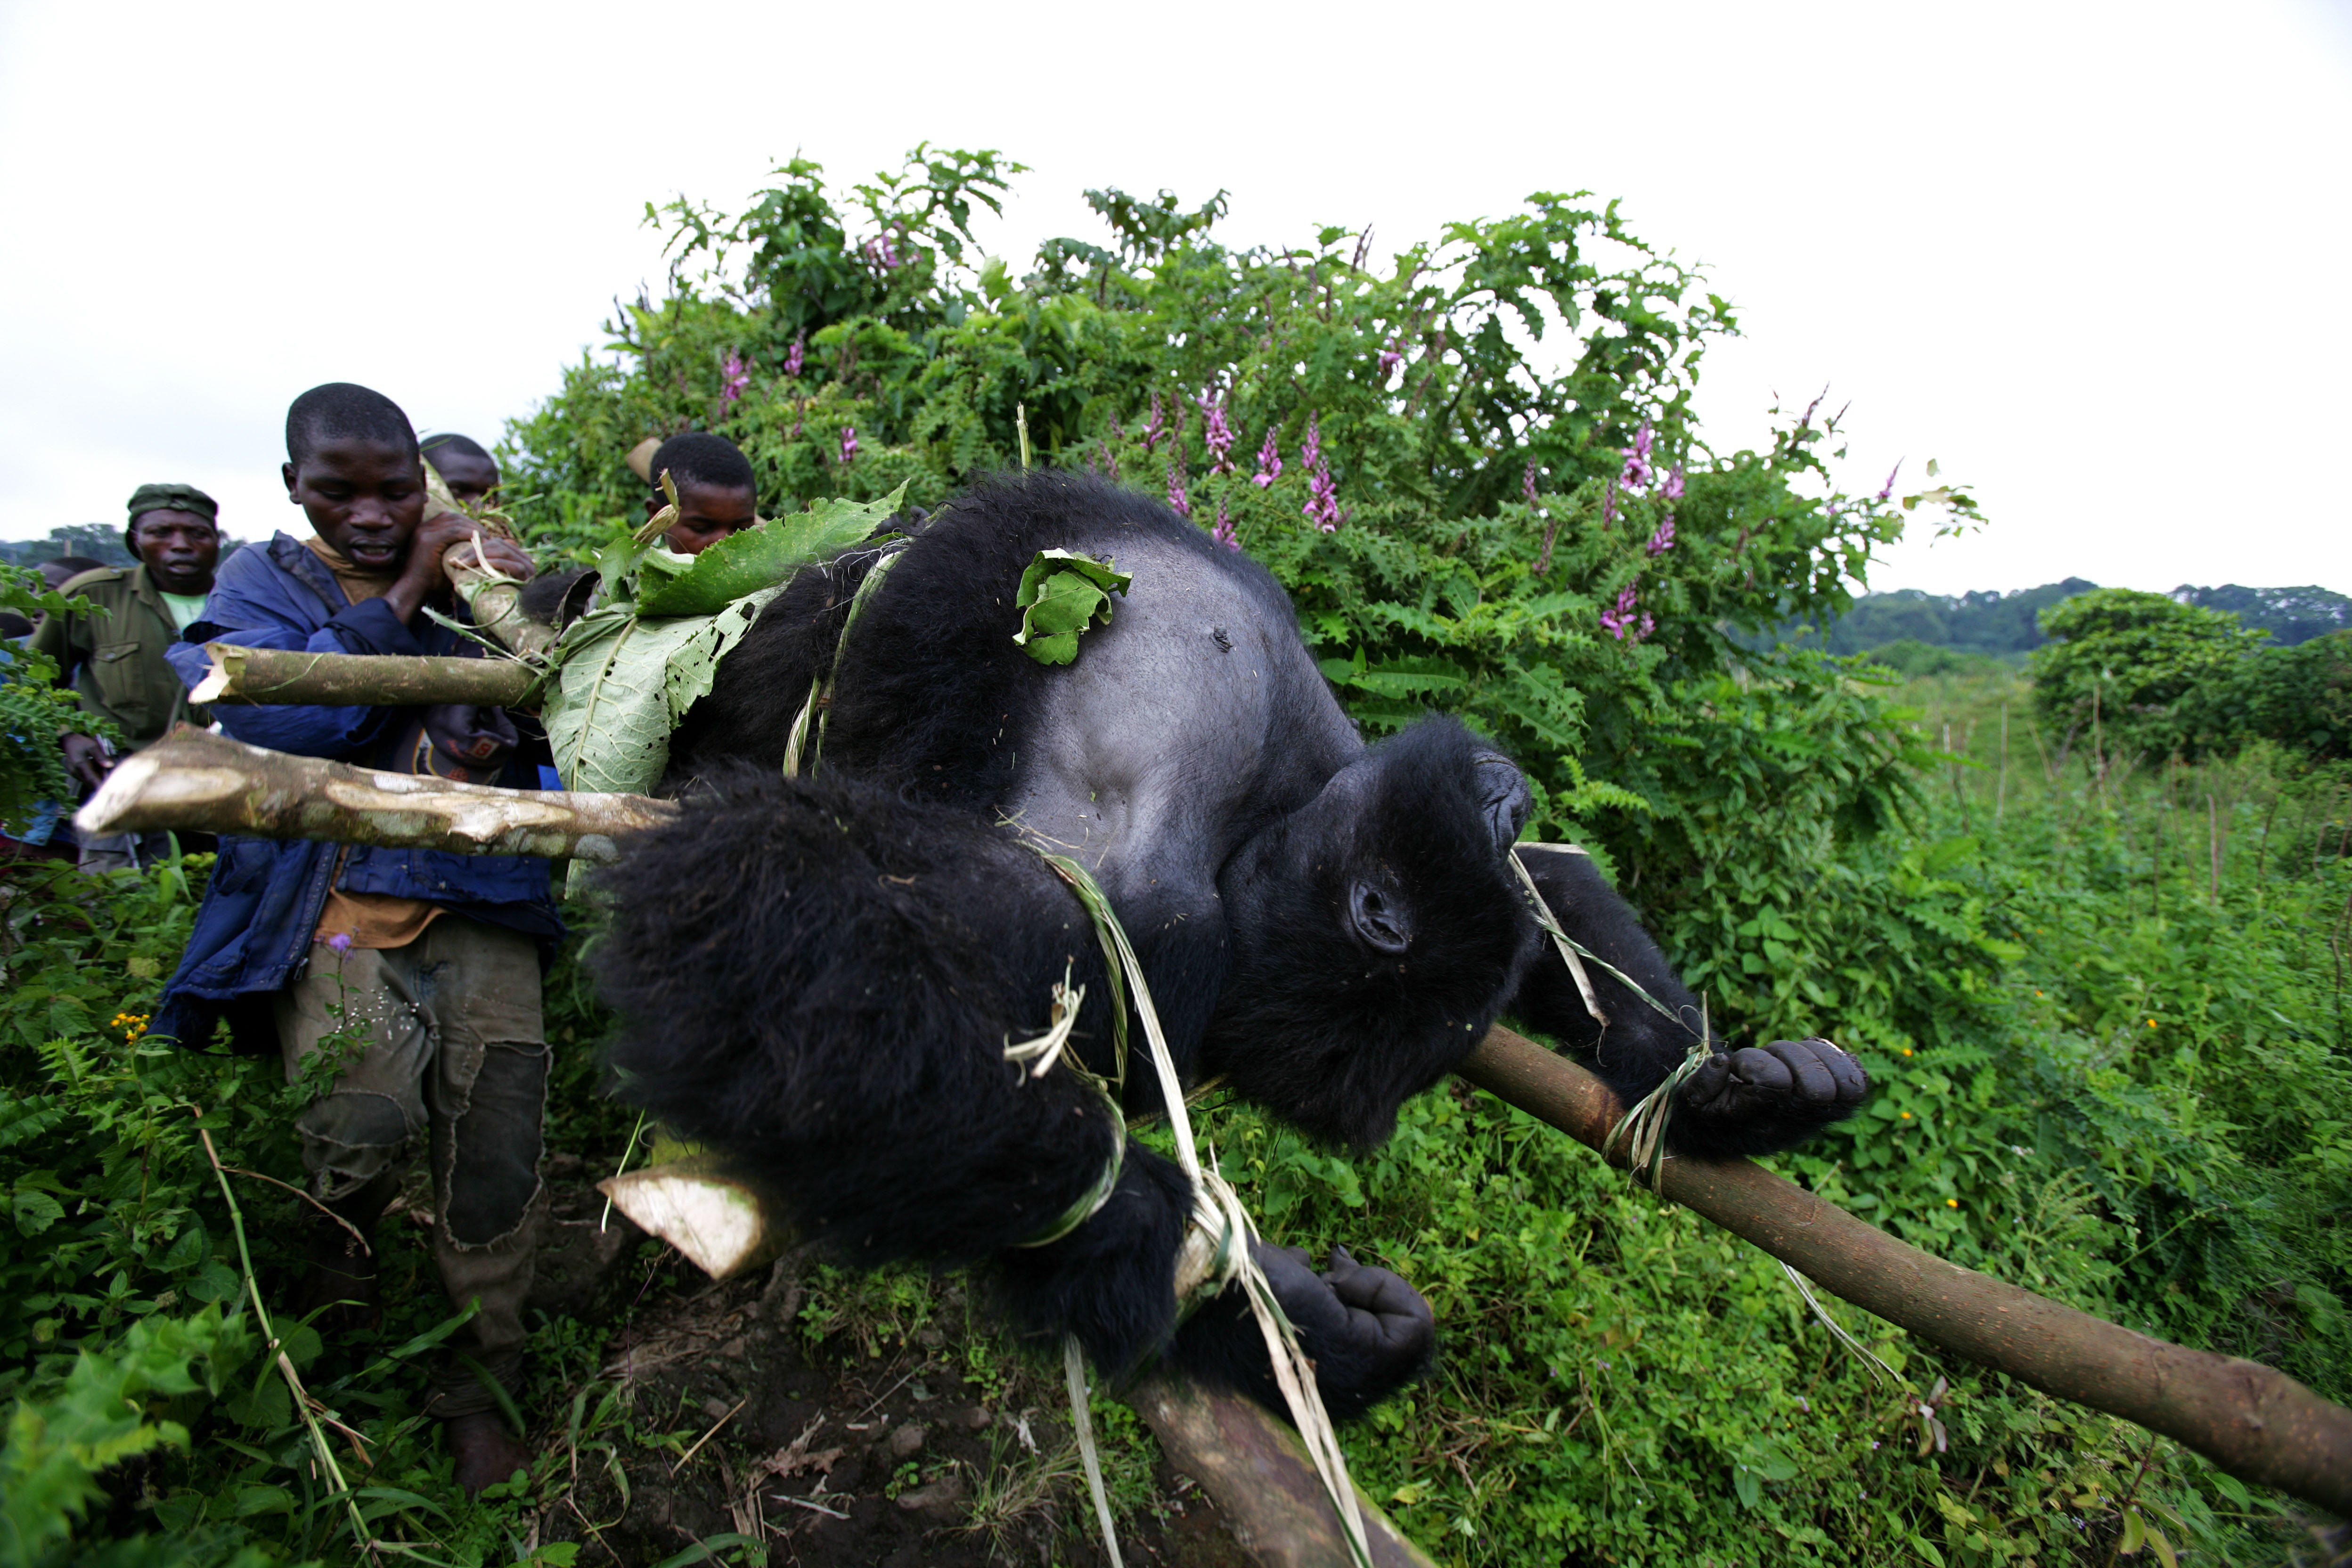 Virunga's gorilla rangers risk armed rebels and poachers